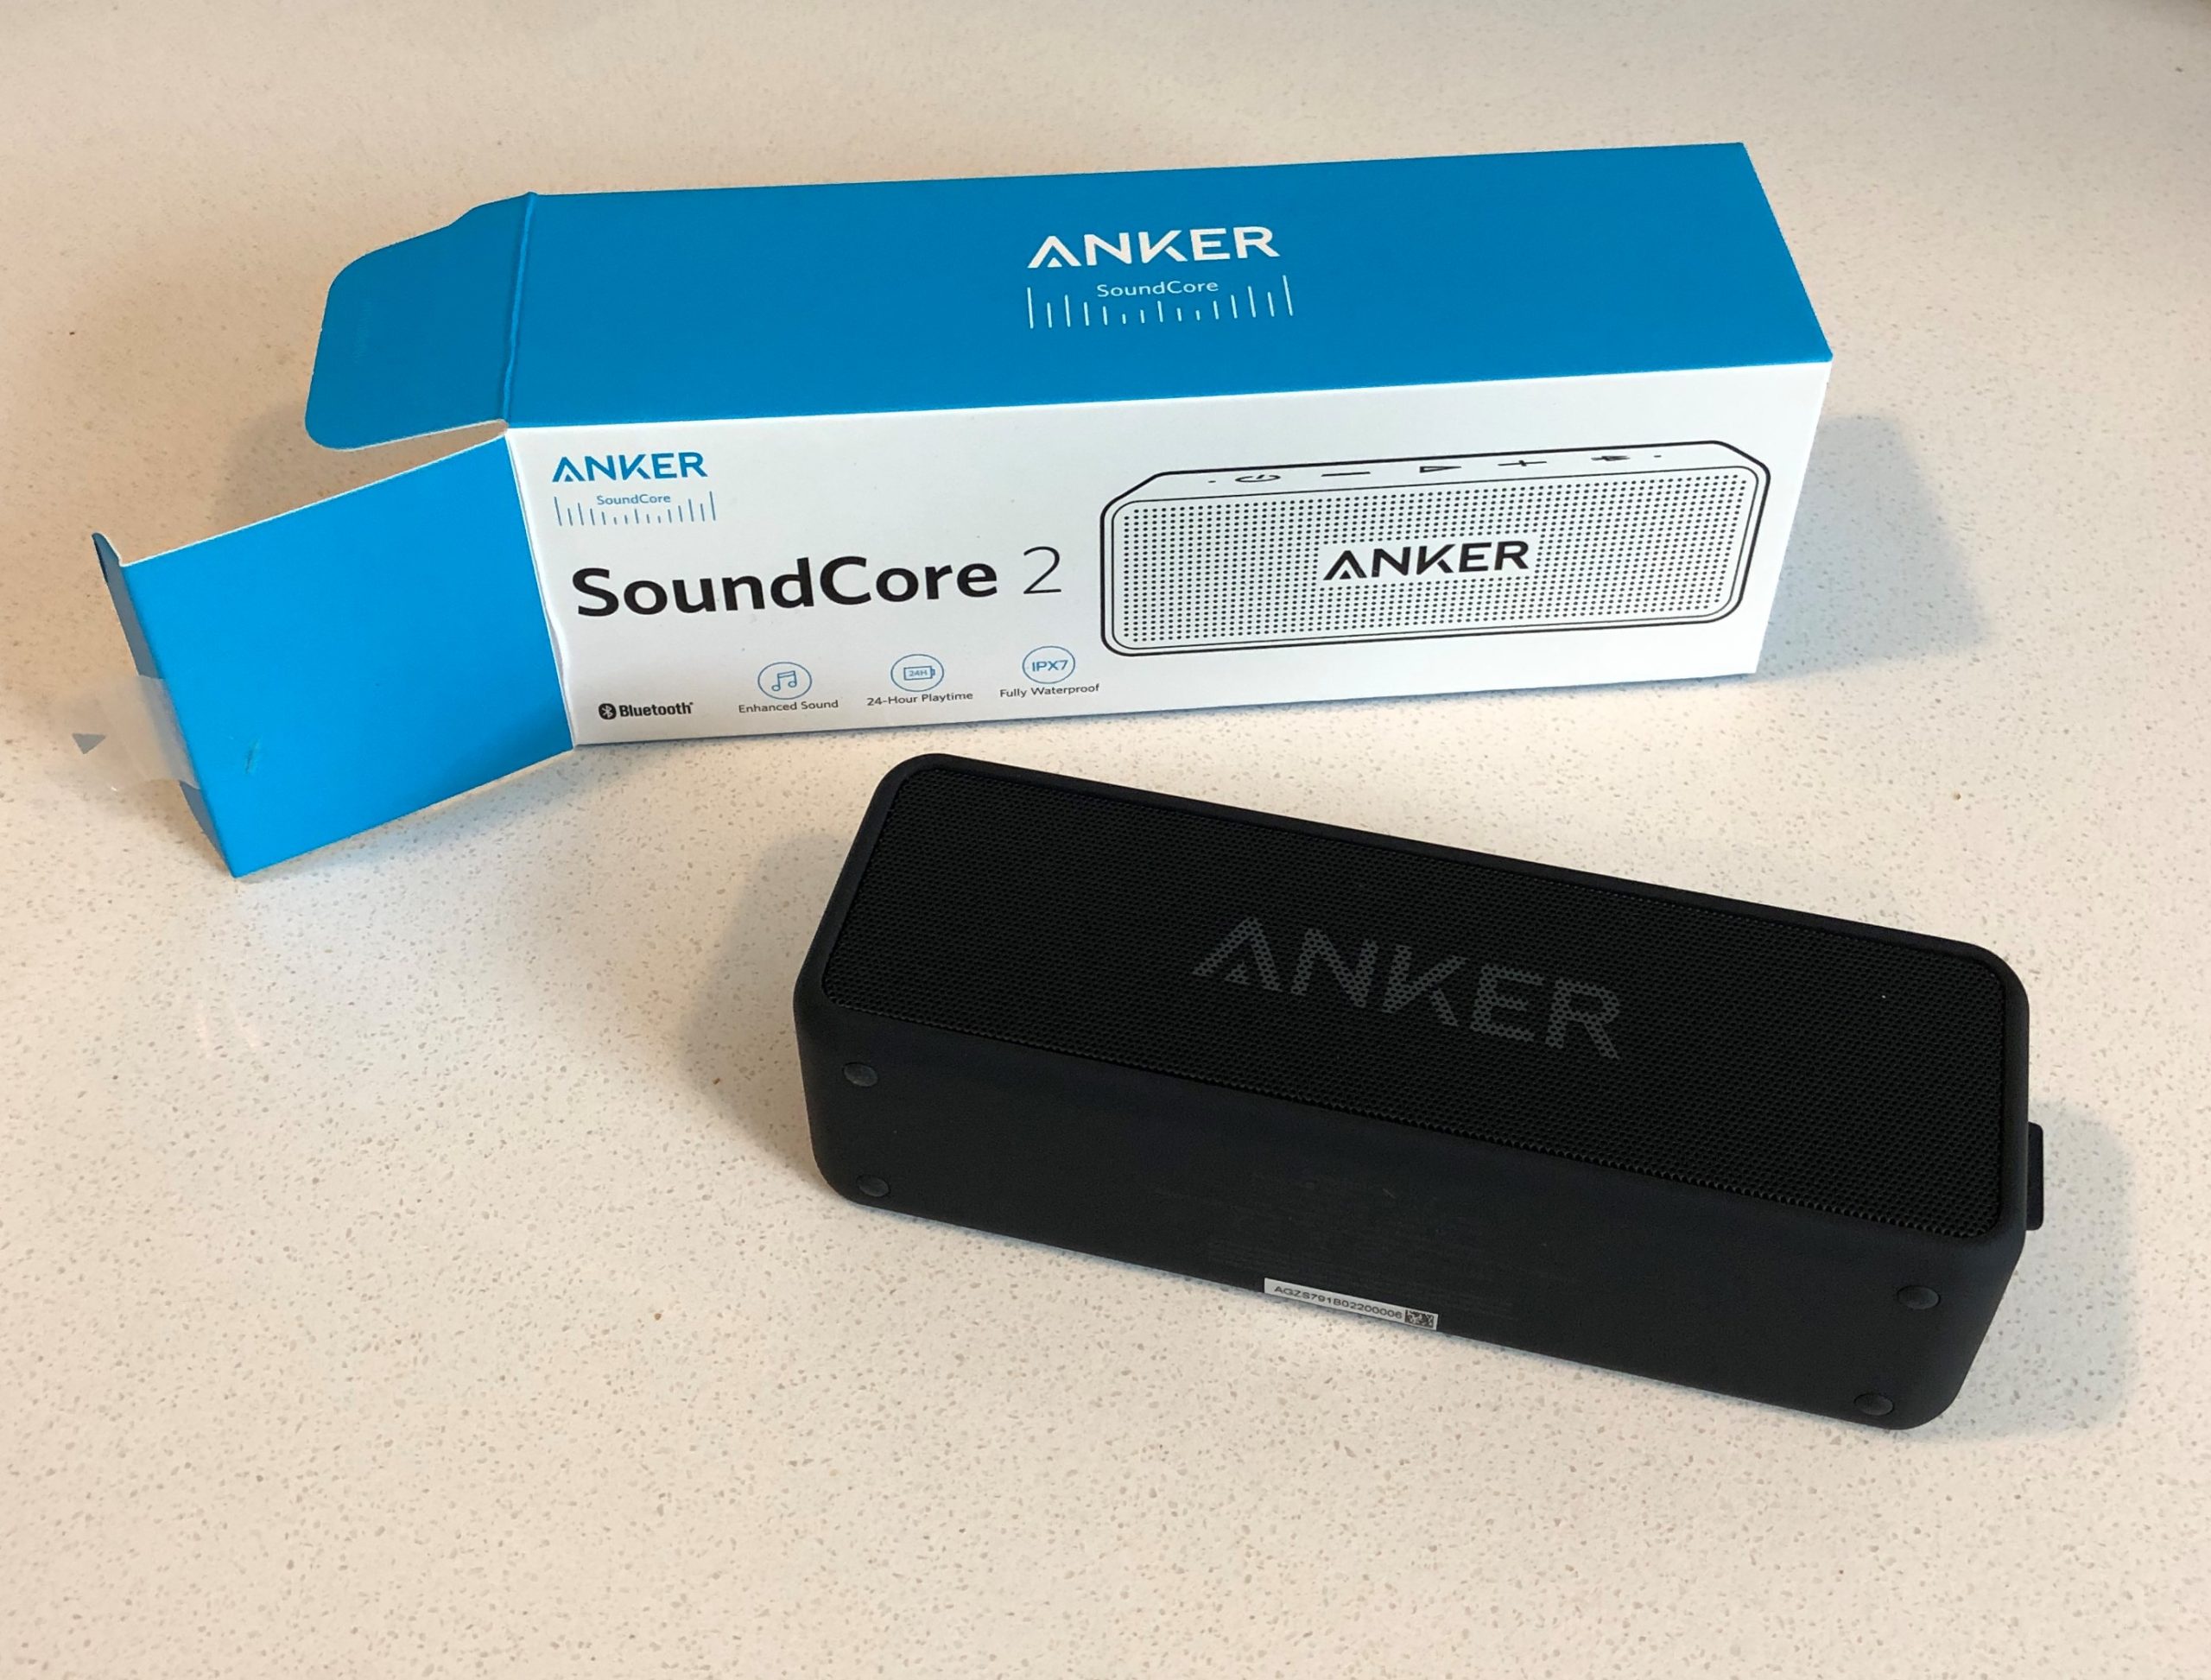 Anker SoundCore 2 speaker